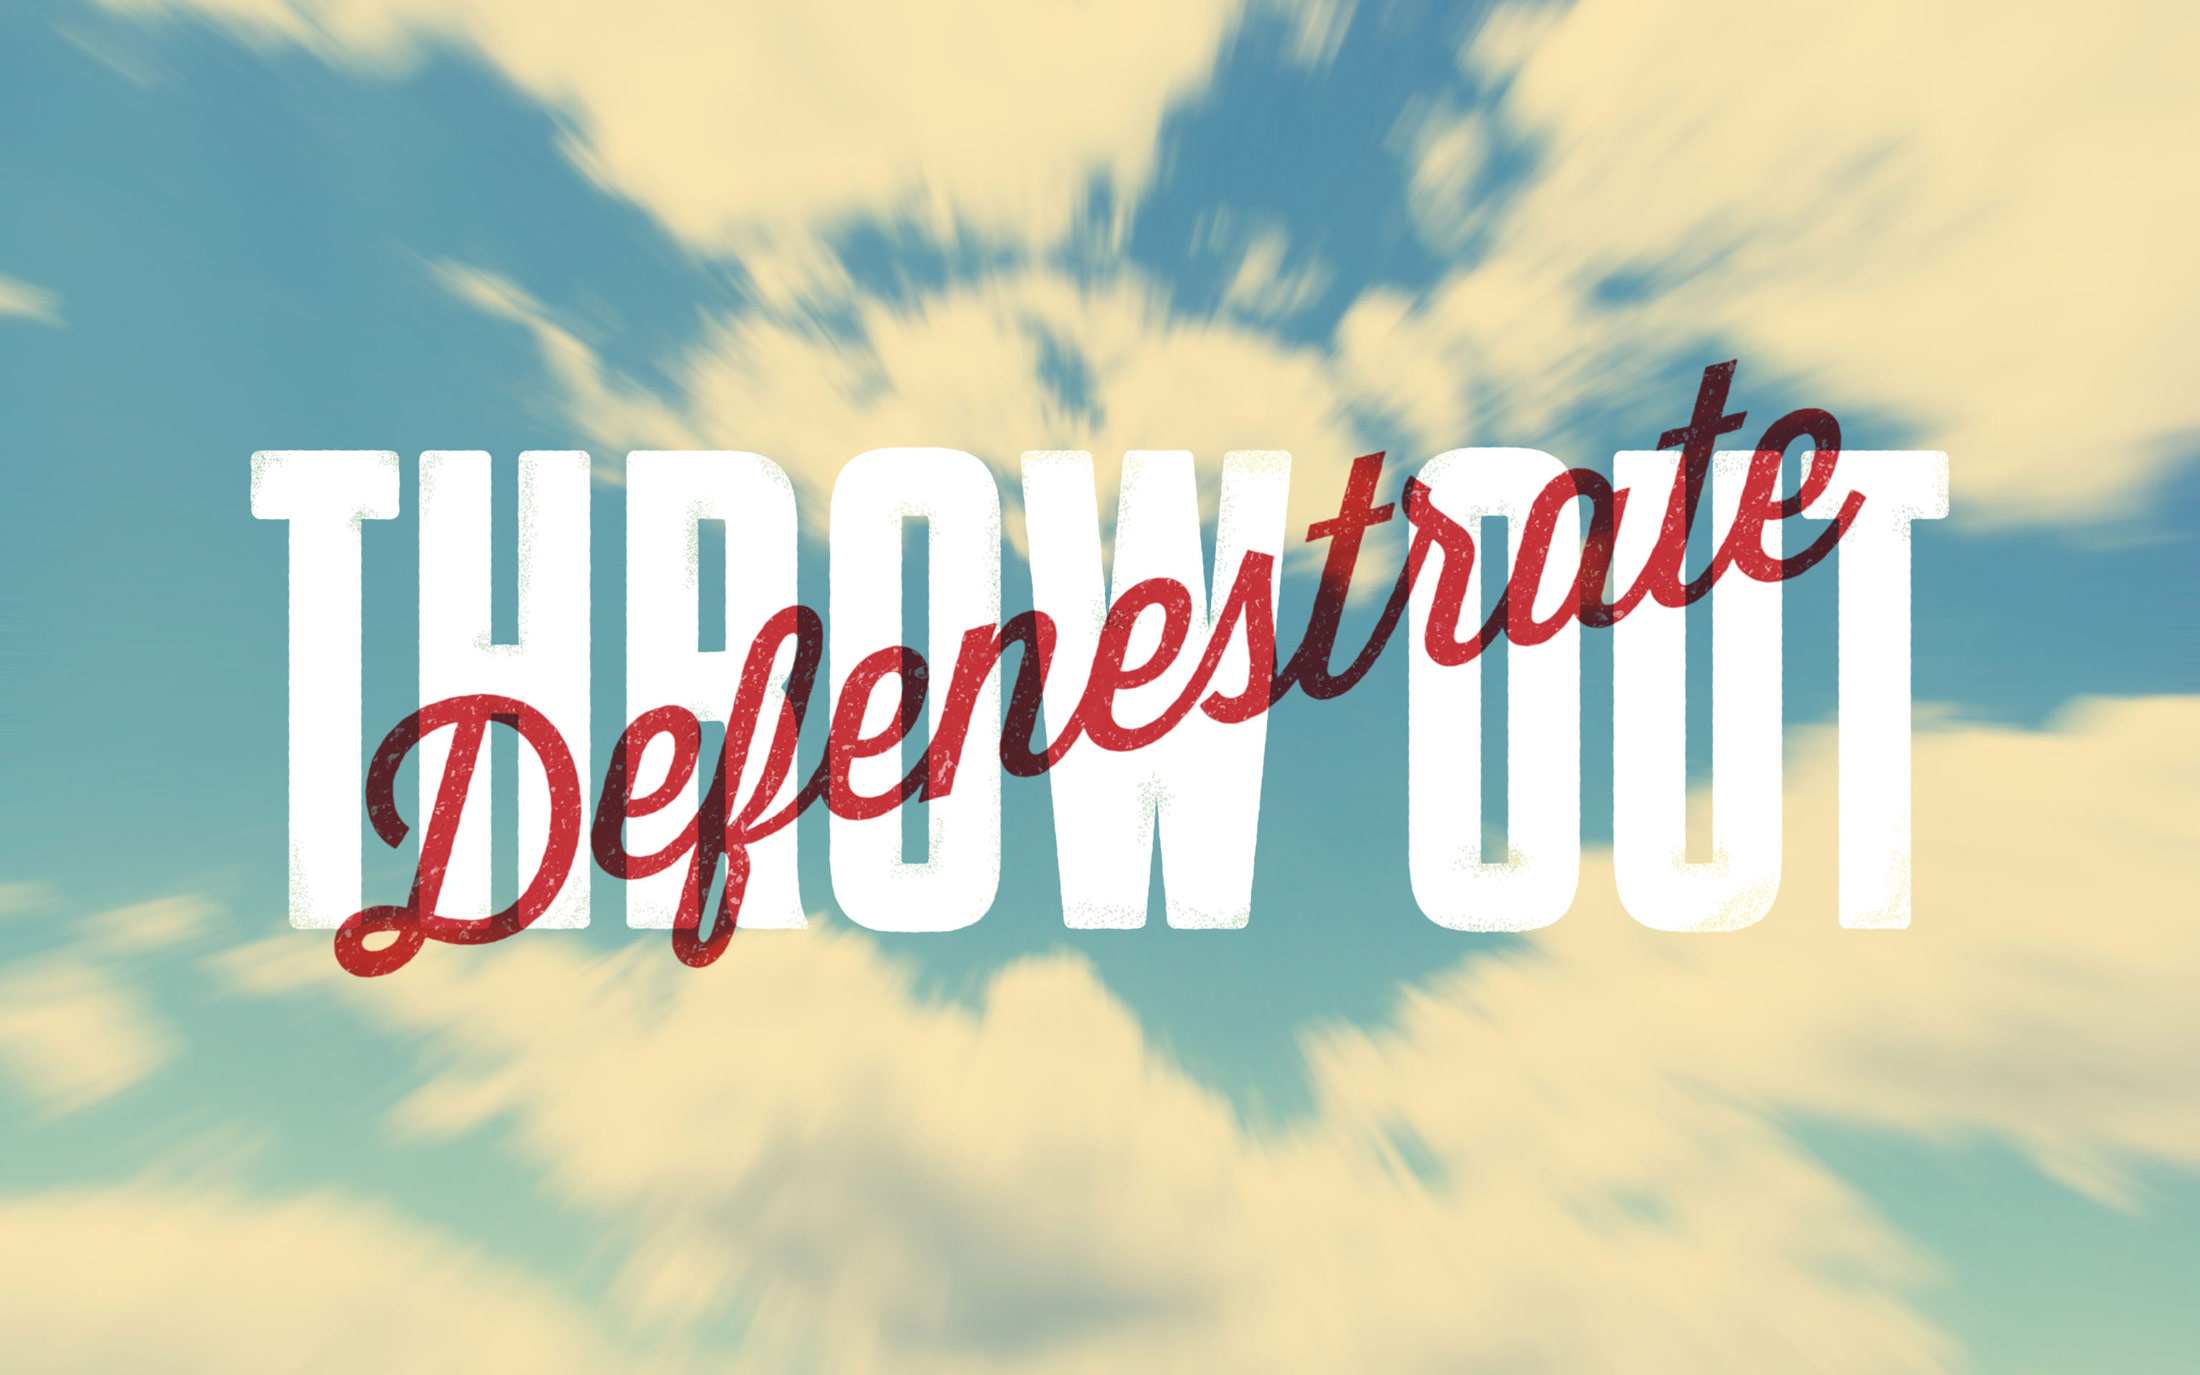 Word of the Week Typography - Defenestrate